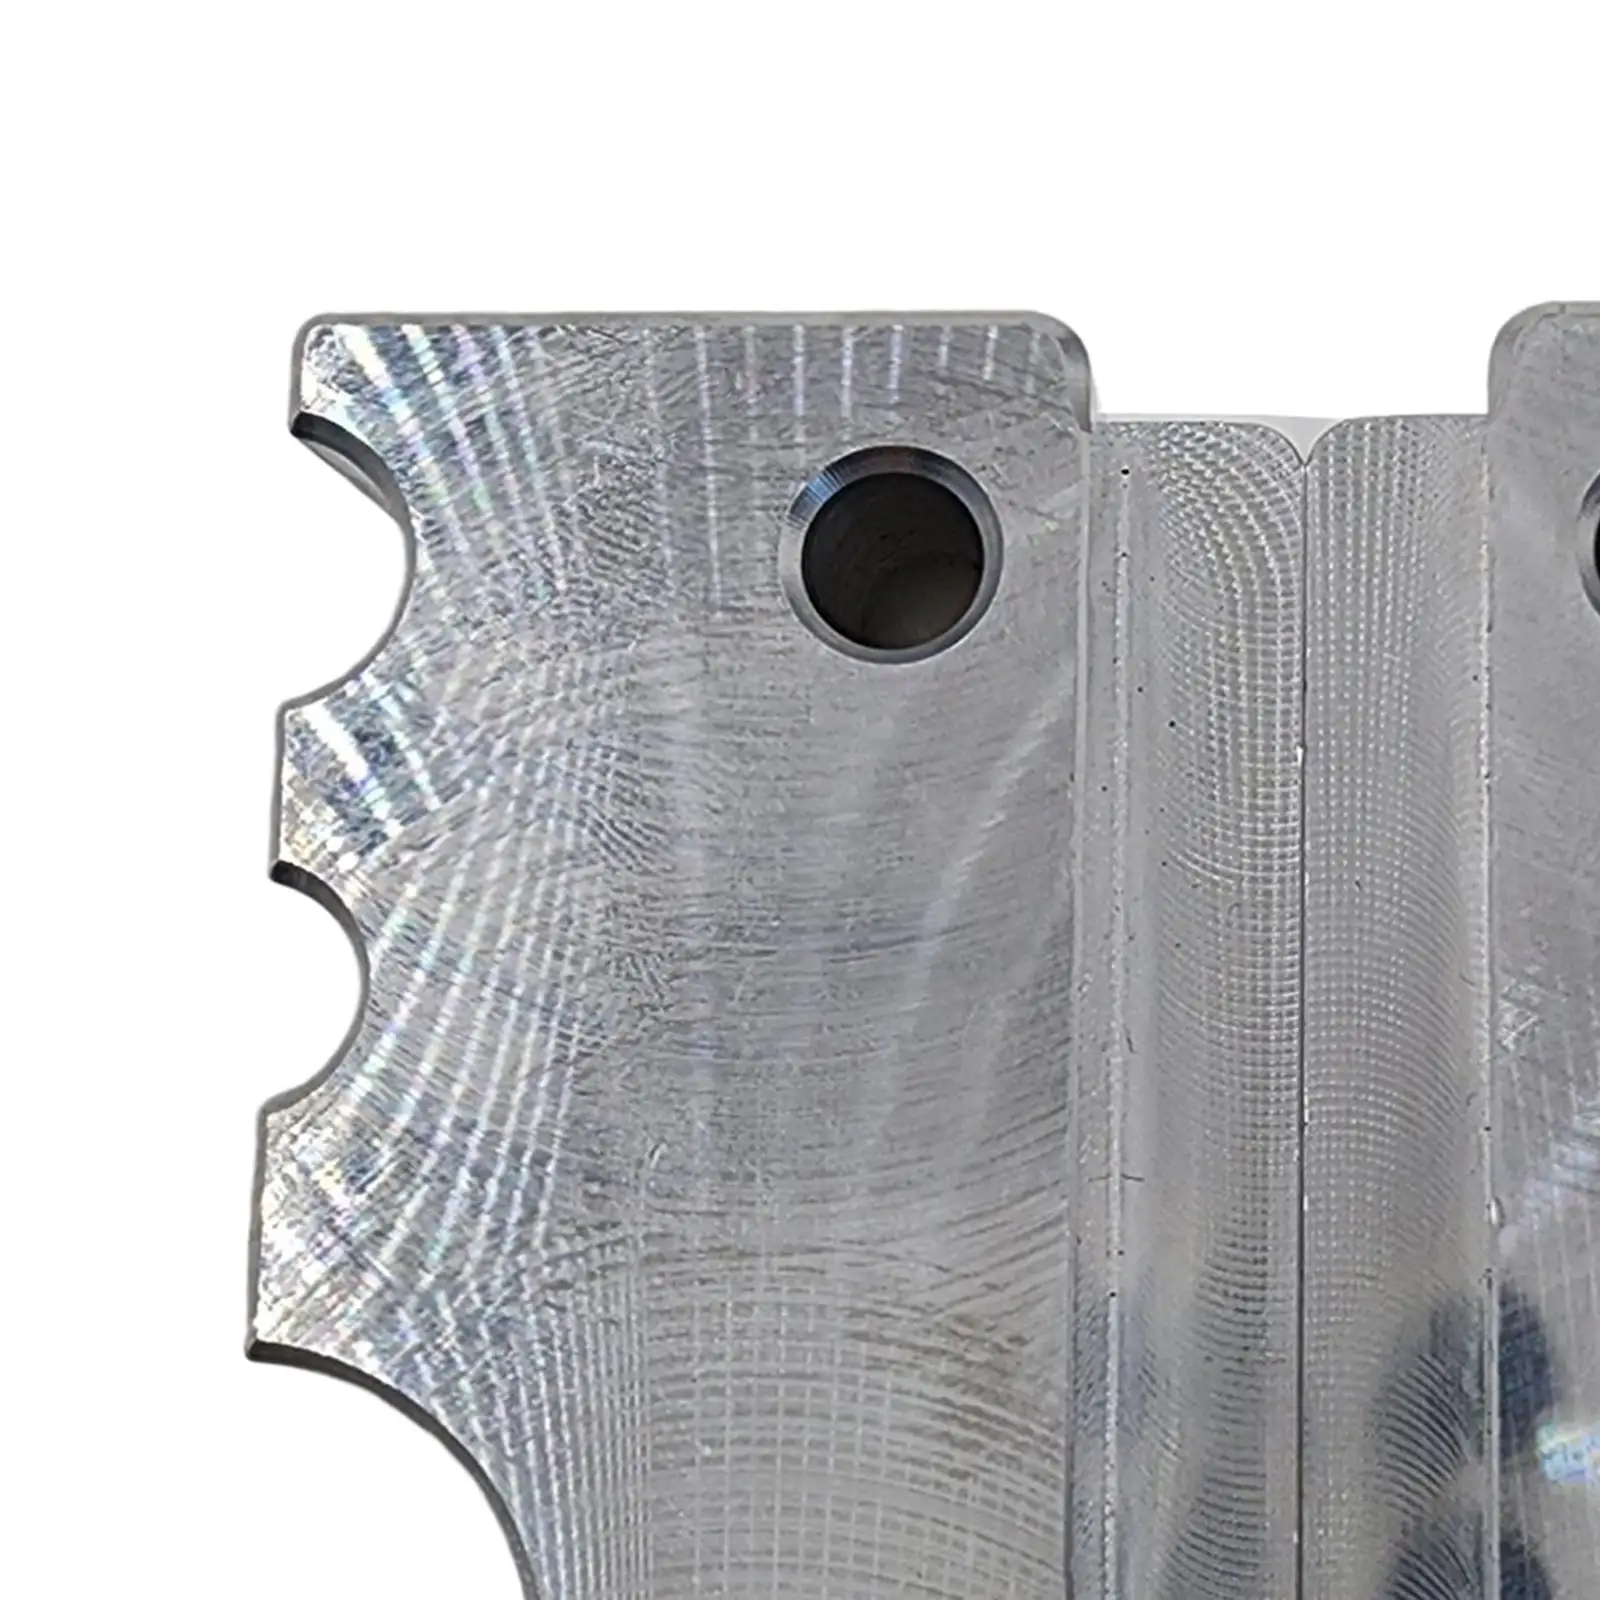 Aluminum Alloy Bike Shocks  Rebuild Tool Fixing 50mm Shock Damper Spring Fixed Grip Damper Vise Block for Repairing